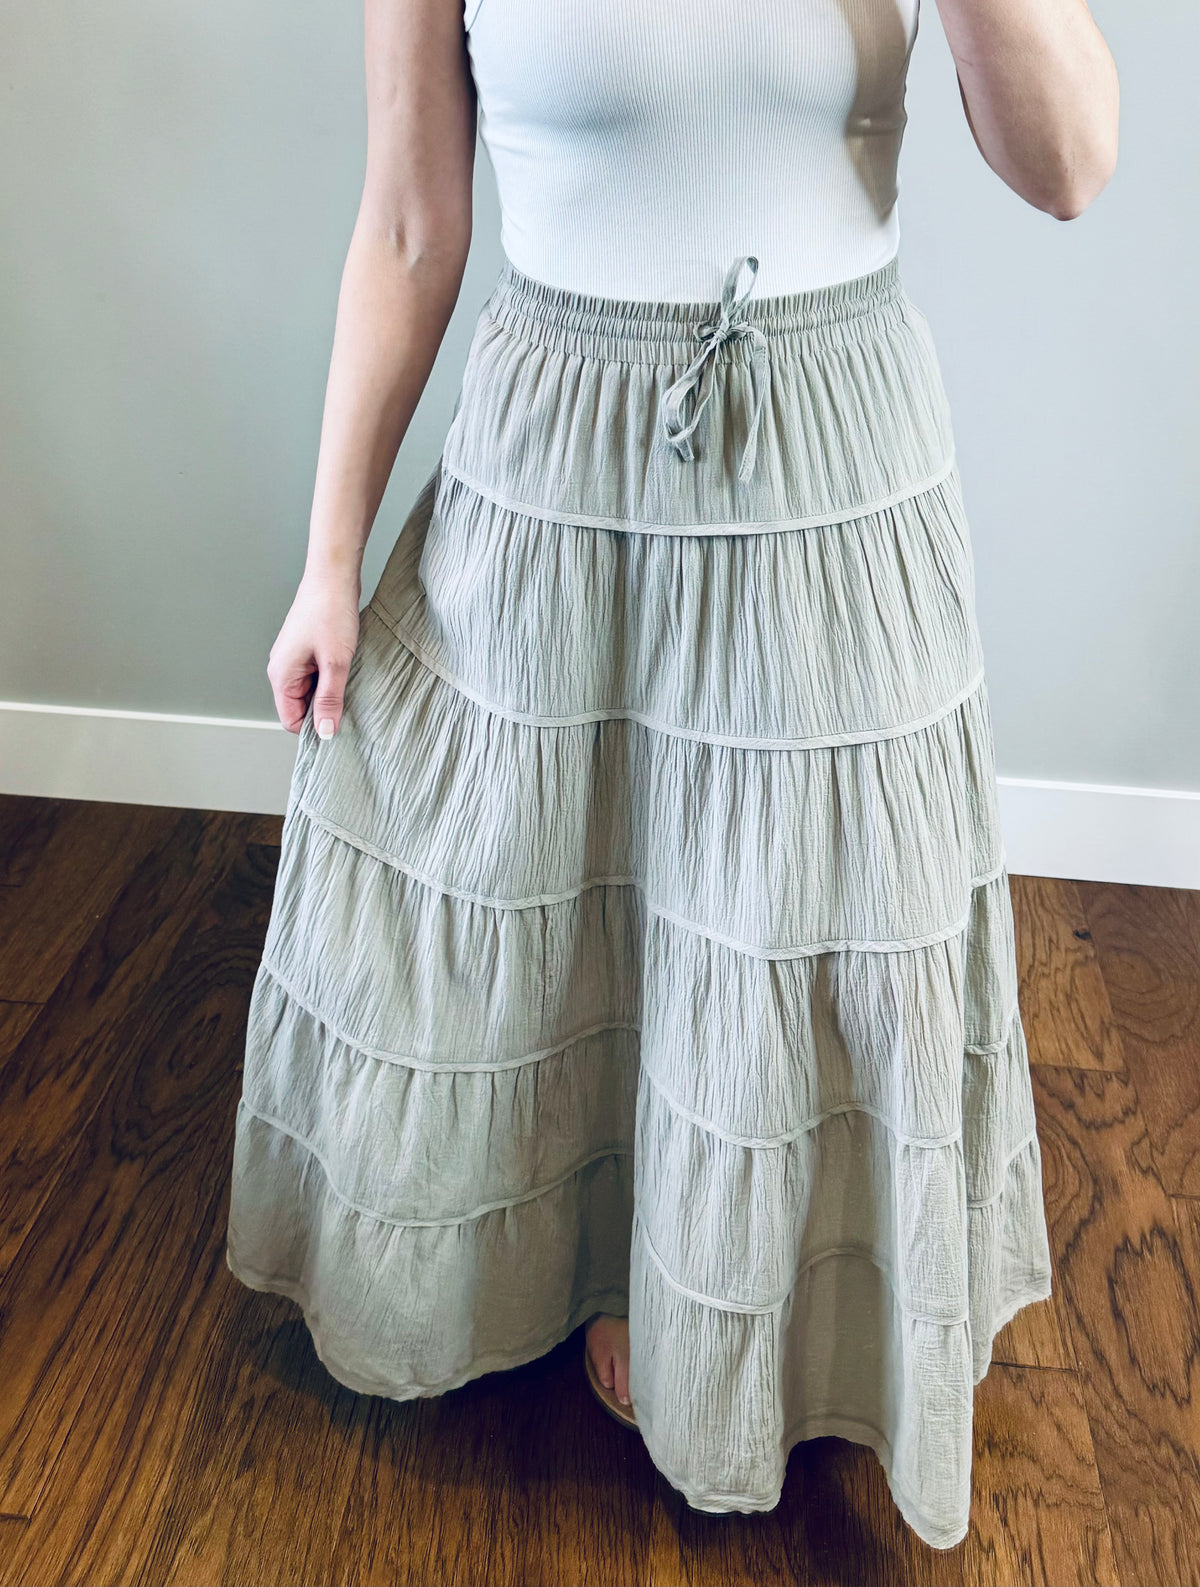 Traveler Tiered Cotton Gauze Maxi Skirt - Mint